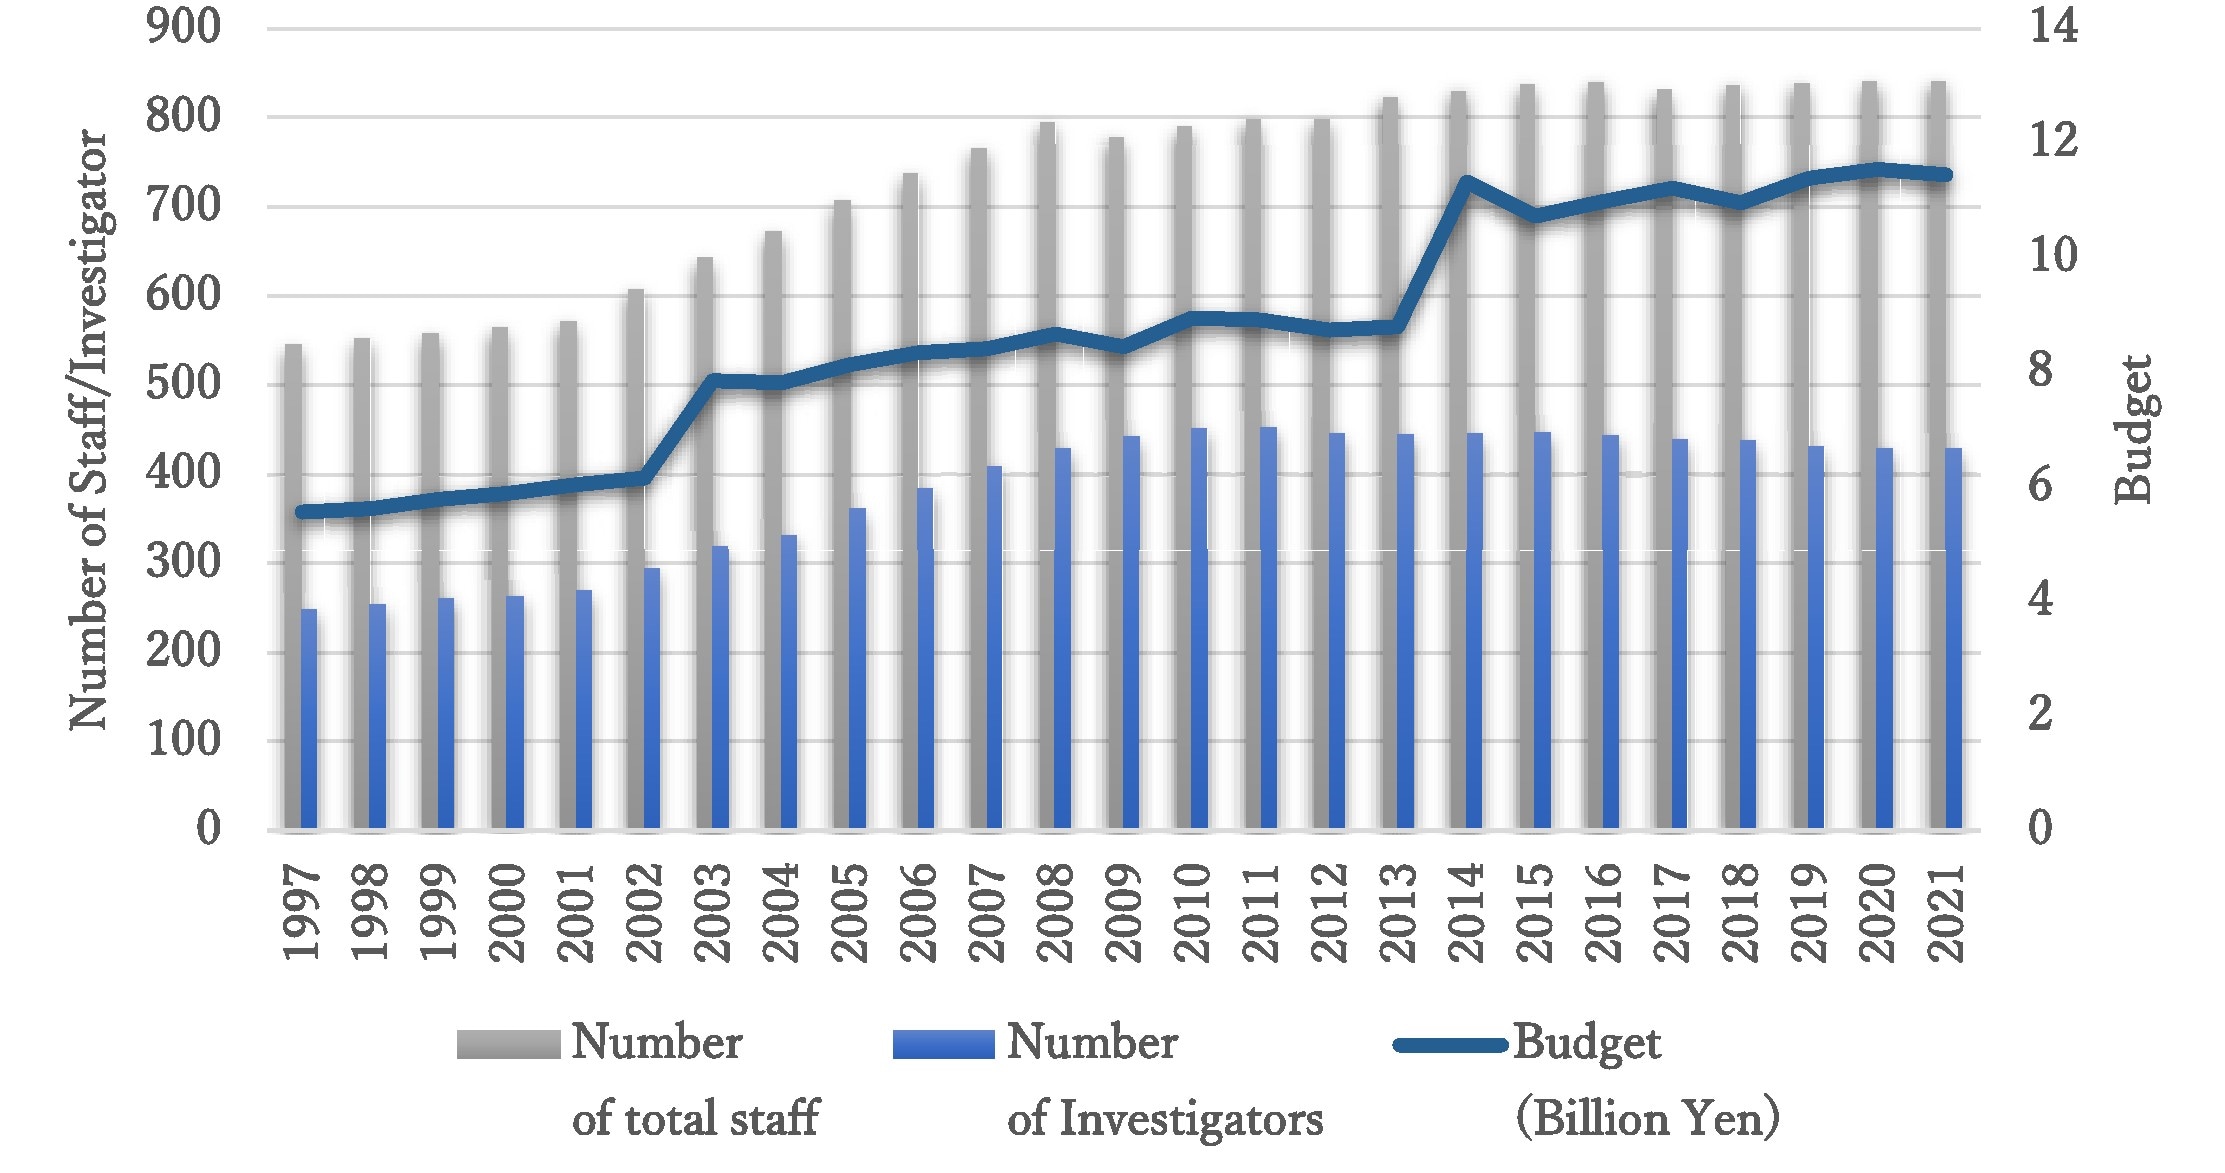 staff budget 1995 - 2021